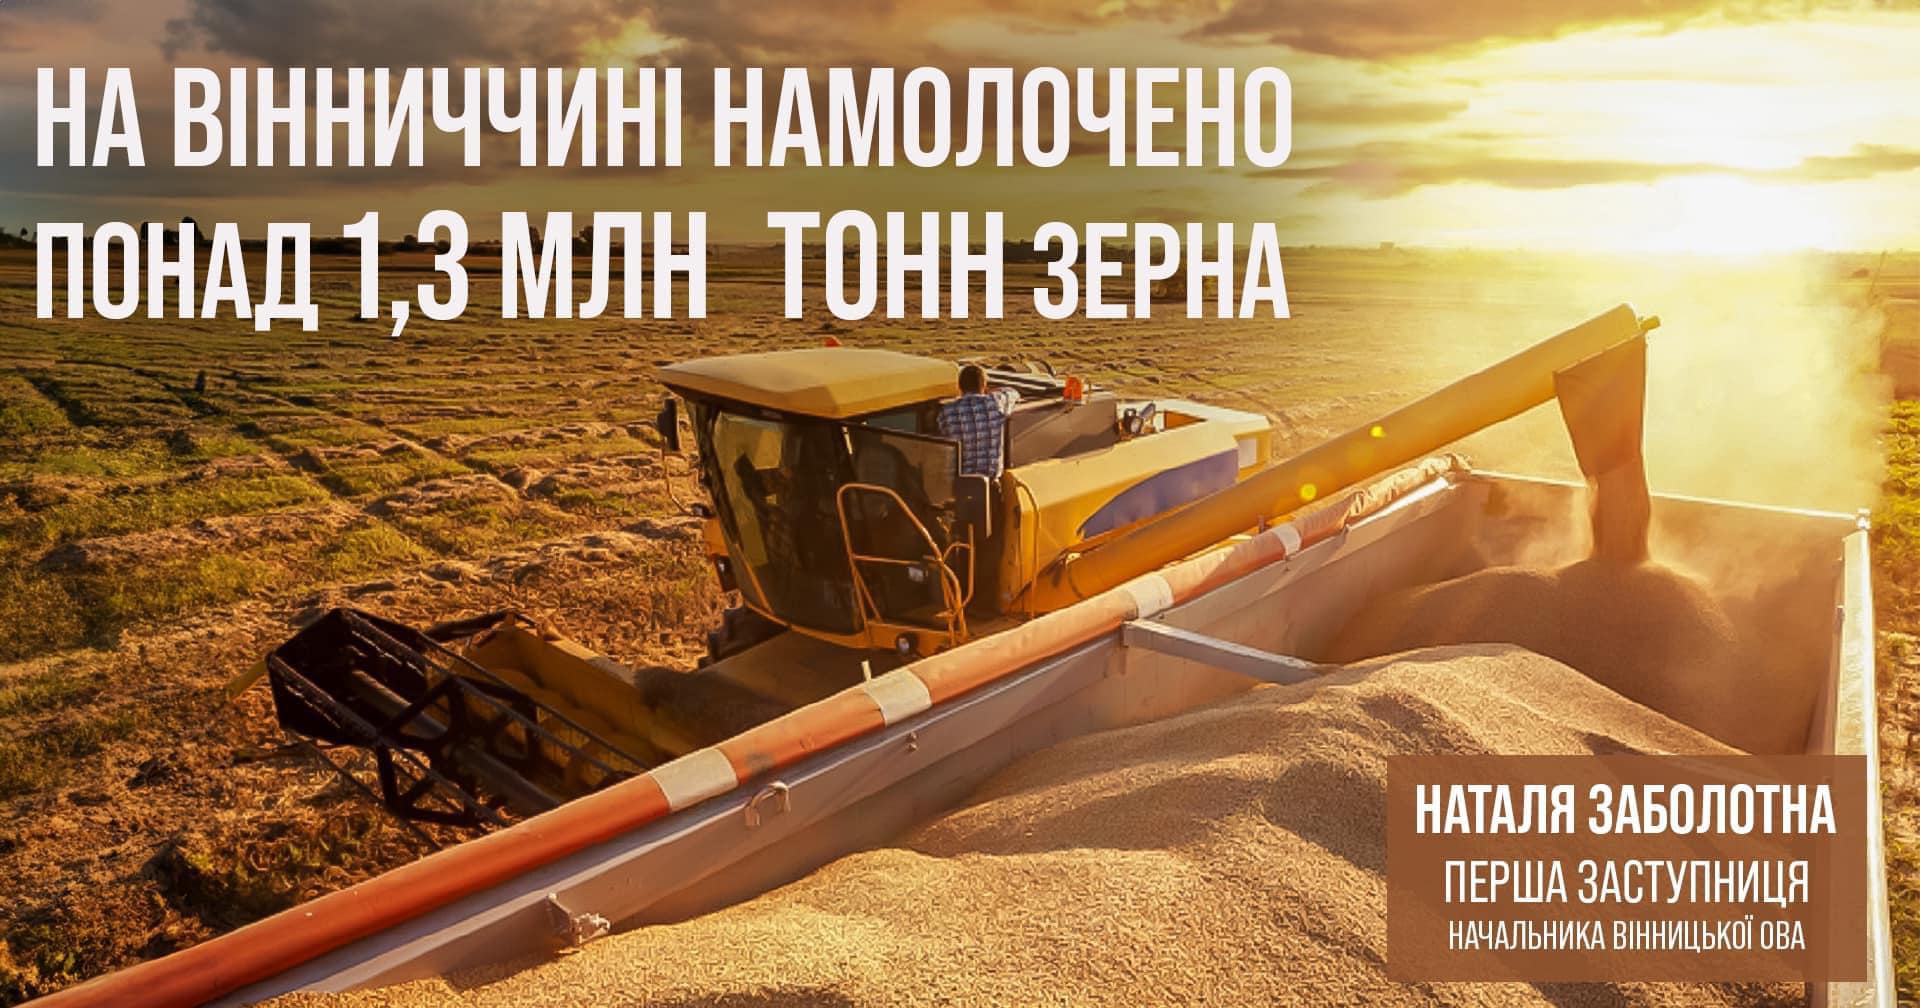 інфографіка із зображенням поля, агротехніки та написом "На Вінниччині намолочено понад 1,3 млн тонн зерна"